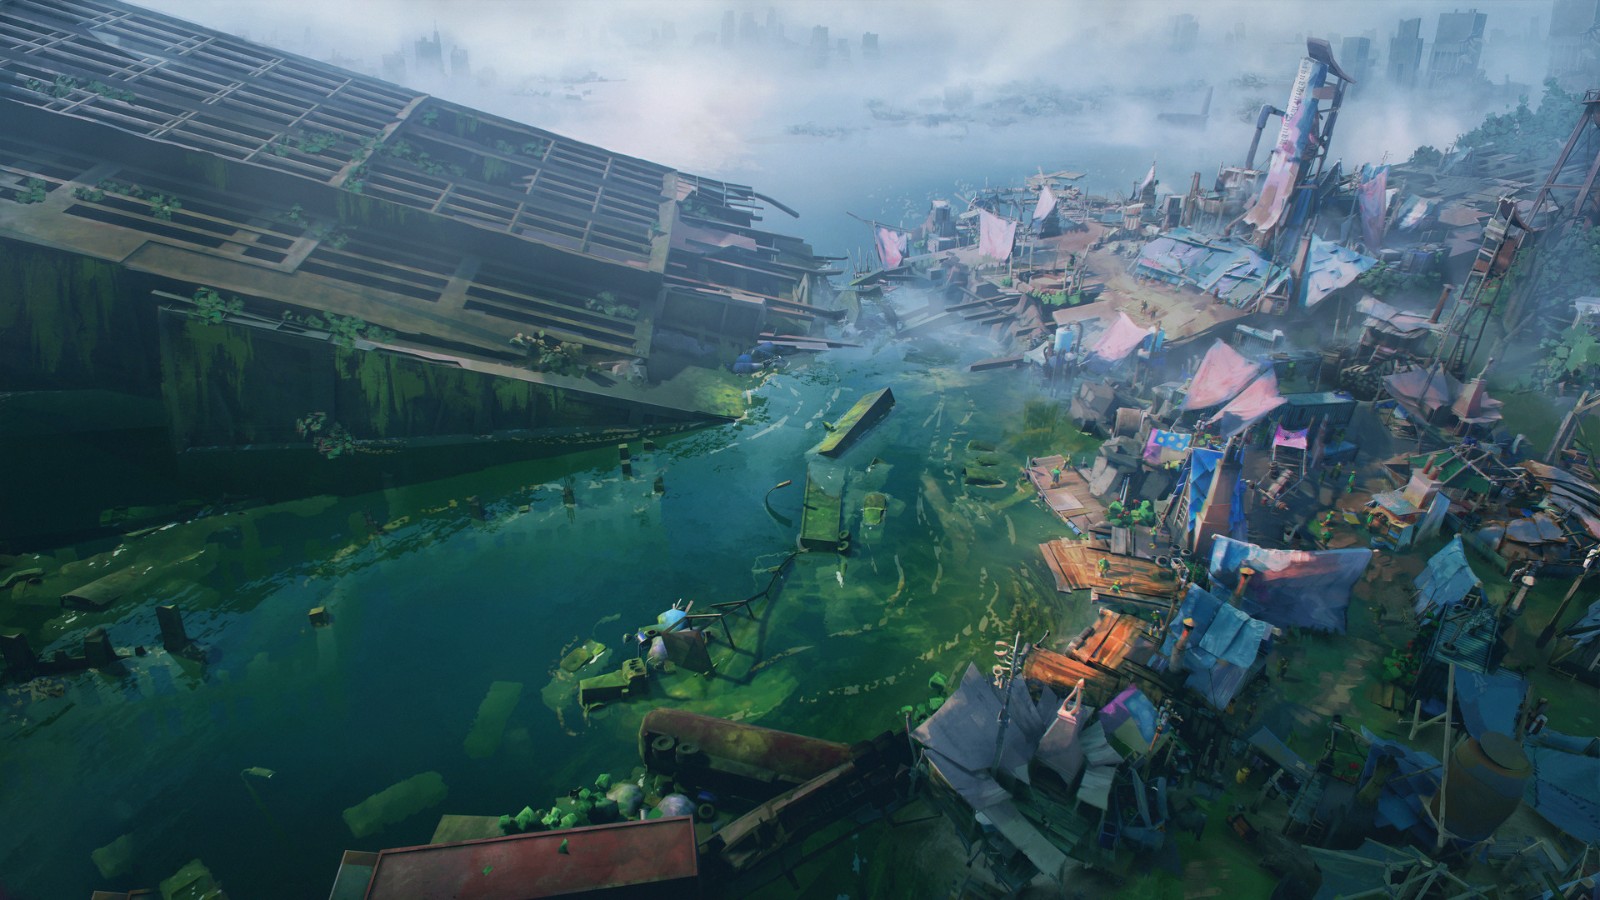 和邪社,猫次元导航_社会生存题材游戏《Floodland》上架Steam 支持中文 二次世界 第4张